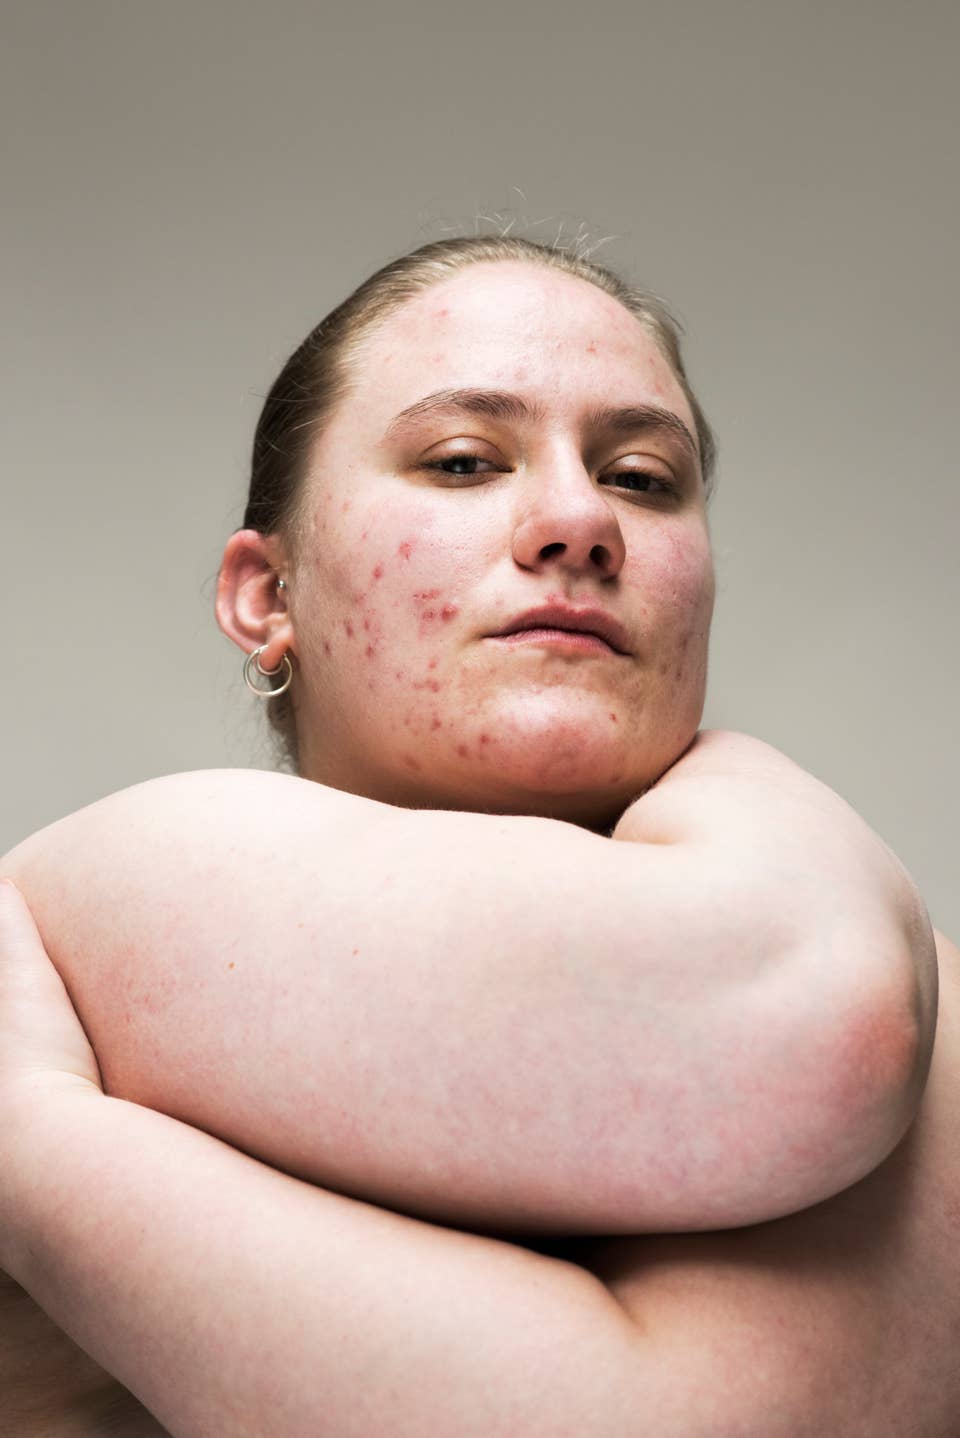 From Vitiligo to Birthmarks: The Beauty of Human Skin